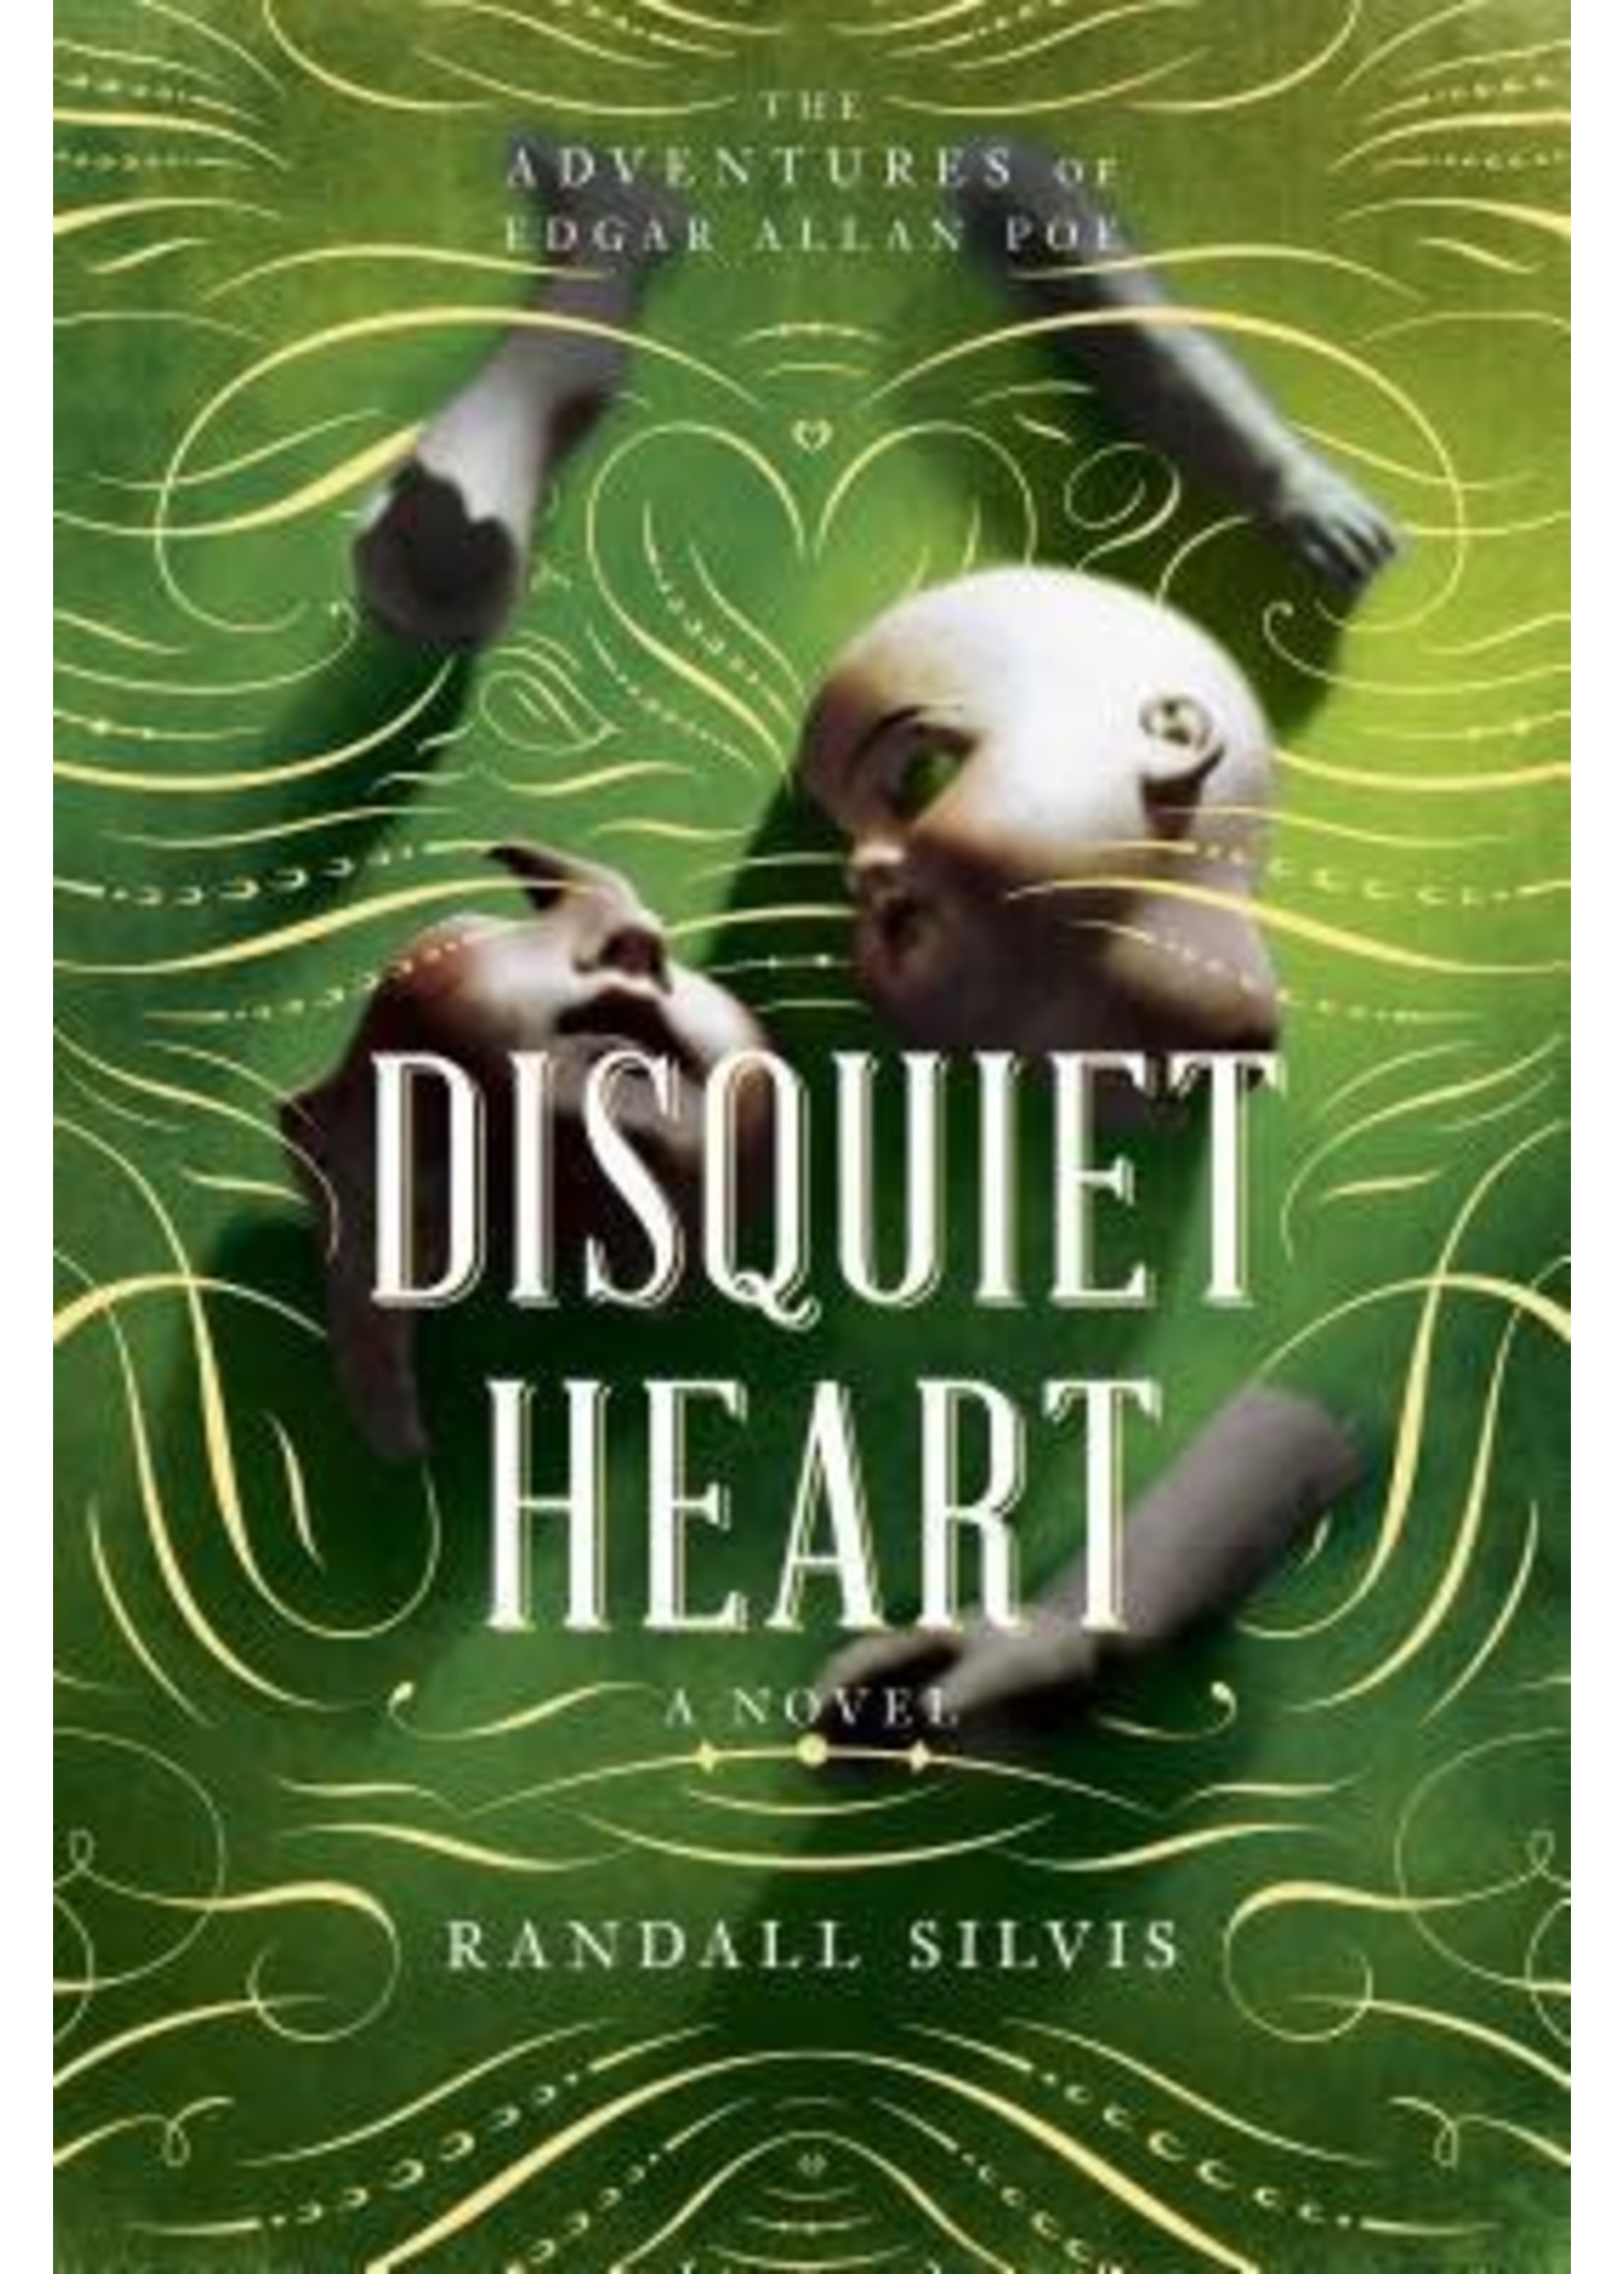 Disquiet Heart (Edgar Allan Poe #2) by Randall Silvis